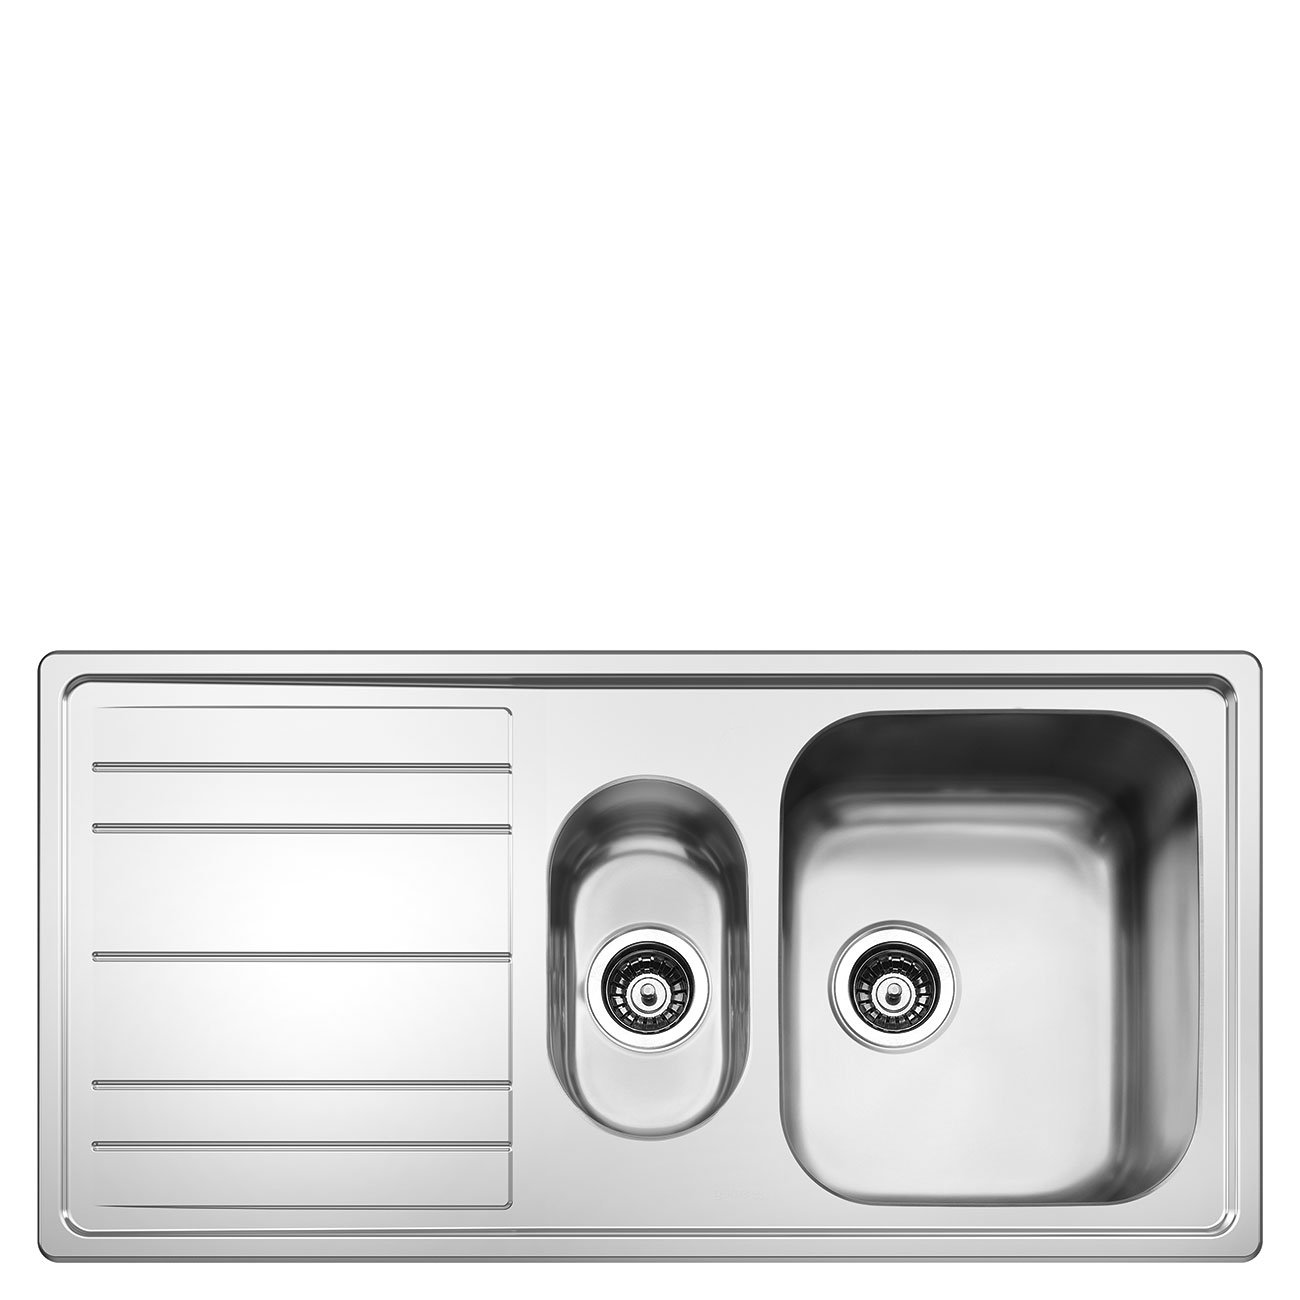 Kitchen sink - Smeg_2